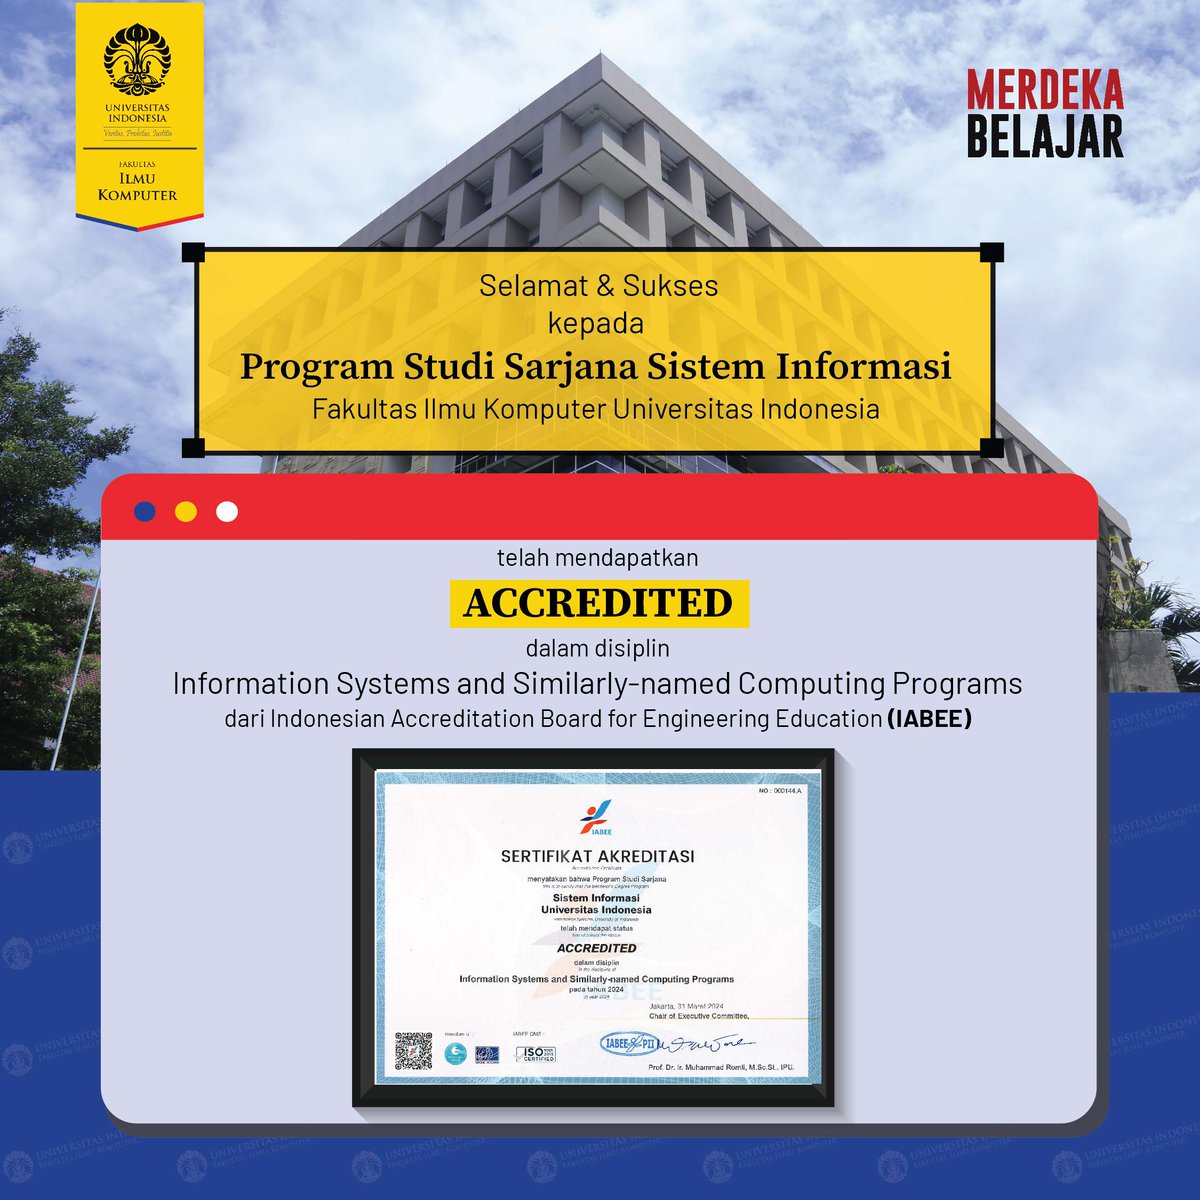 Selamat & Sukses kepada Program Studi Sarjana Sistem Informasi Fasilkom UI telah mendapatkankan status ACCREDITED dalam disiplin Information Systems and Similarly-named Computing Programs dari Indonesian Accreditation Board for Engineering Education (IABEE)